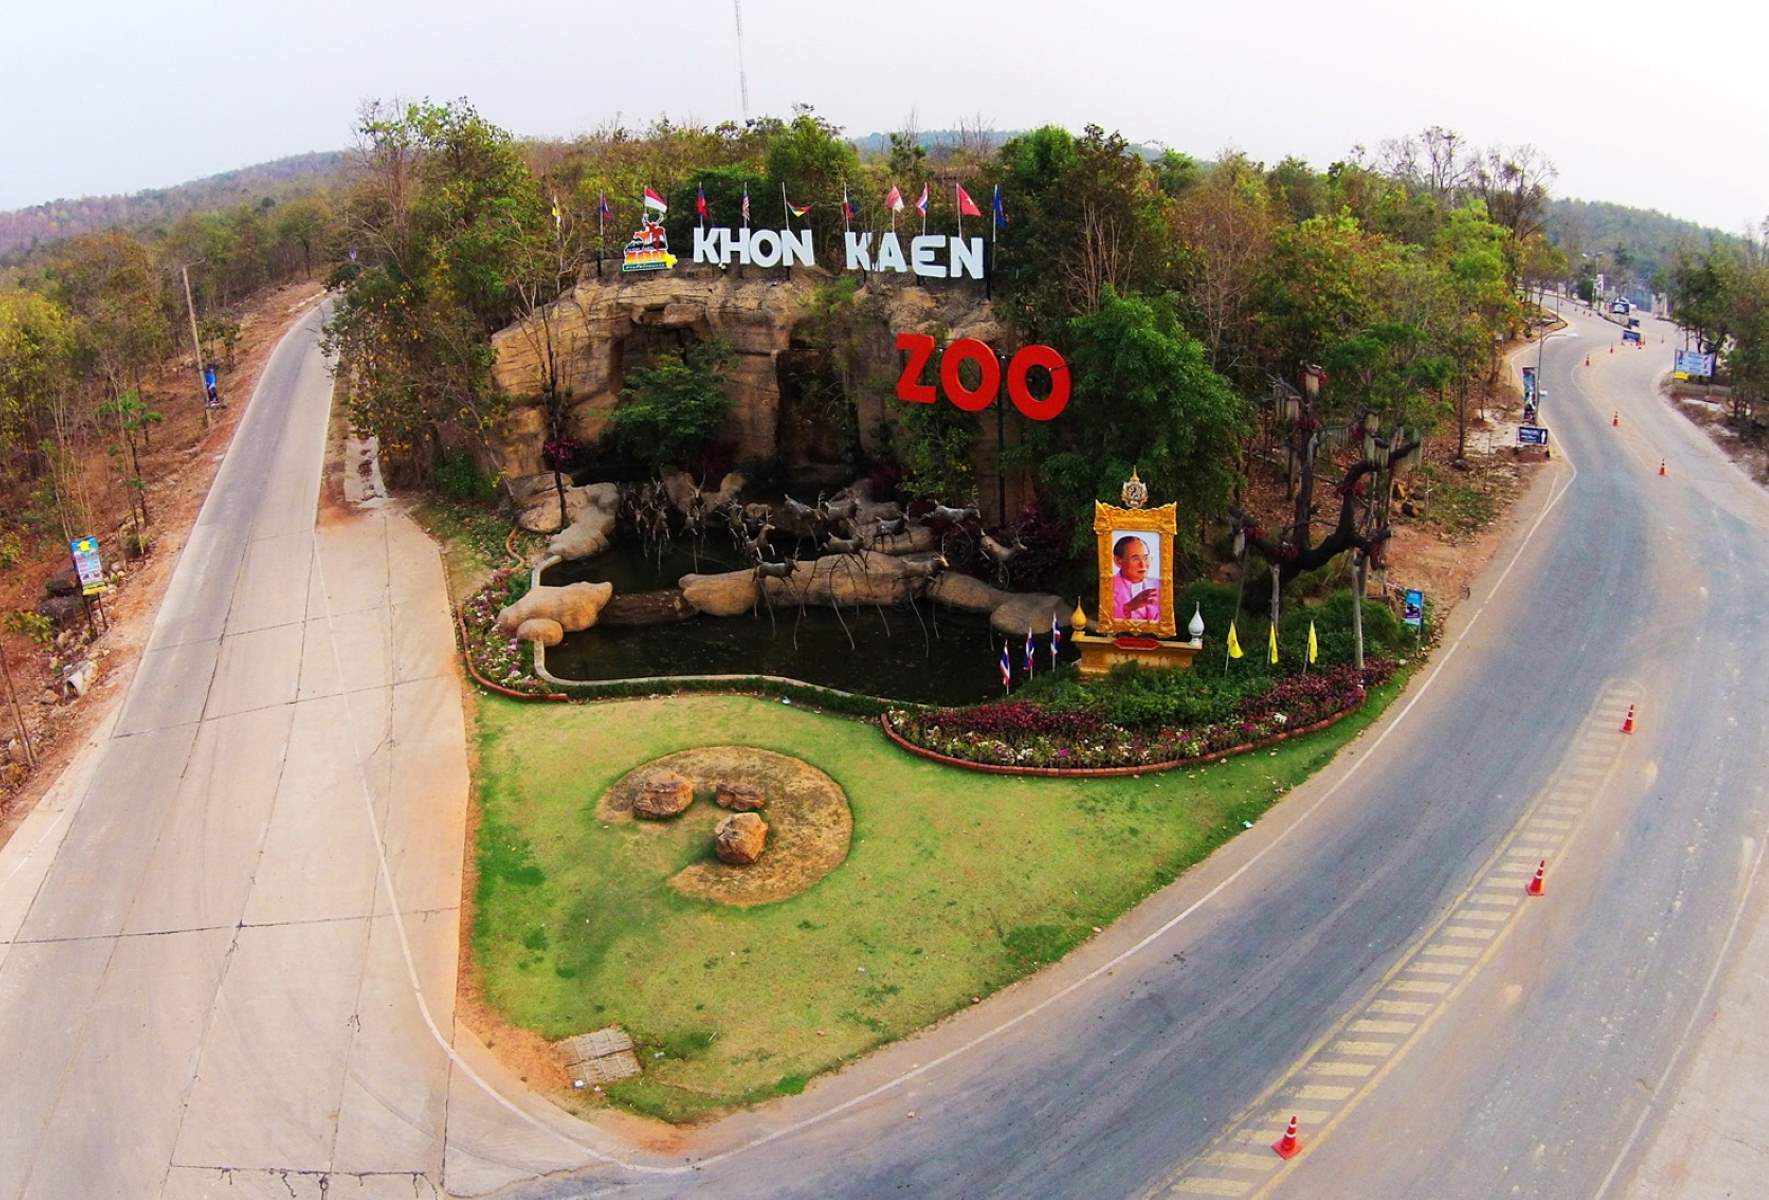 15-astonishing-facts-about-khon-kaen-zoo